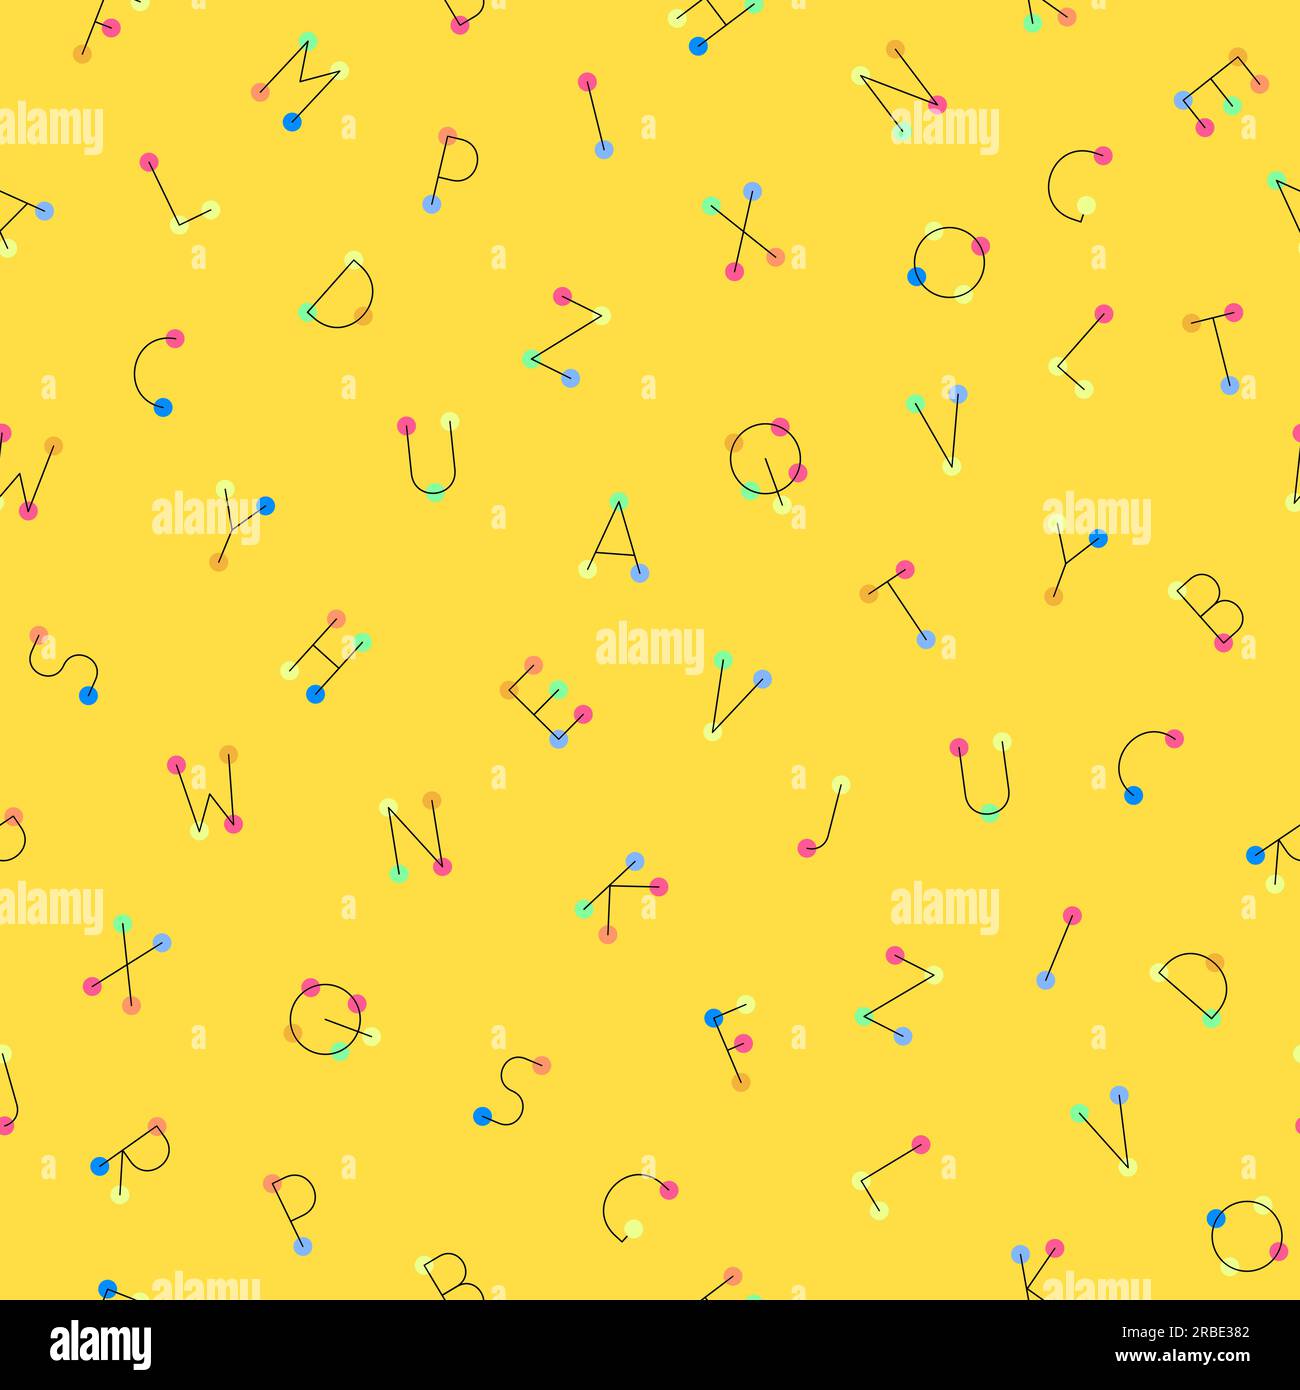 Sequenza alfabetica vettoriale colorata e senza cuciture. Sfondo giallo alla moda ripetibile con lettere. Stampe vivaci e divertenti. Illustrazione Vettoriale